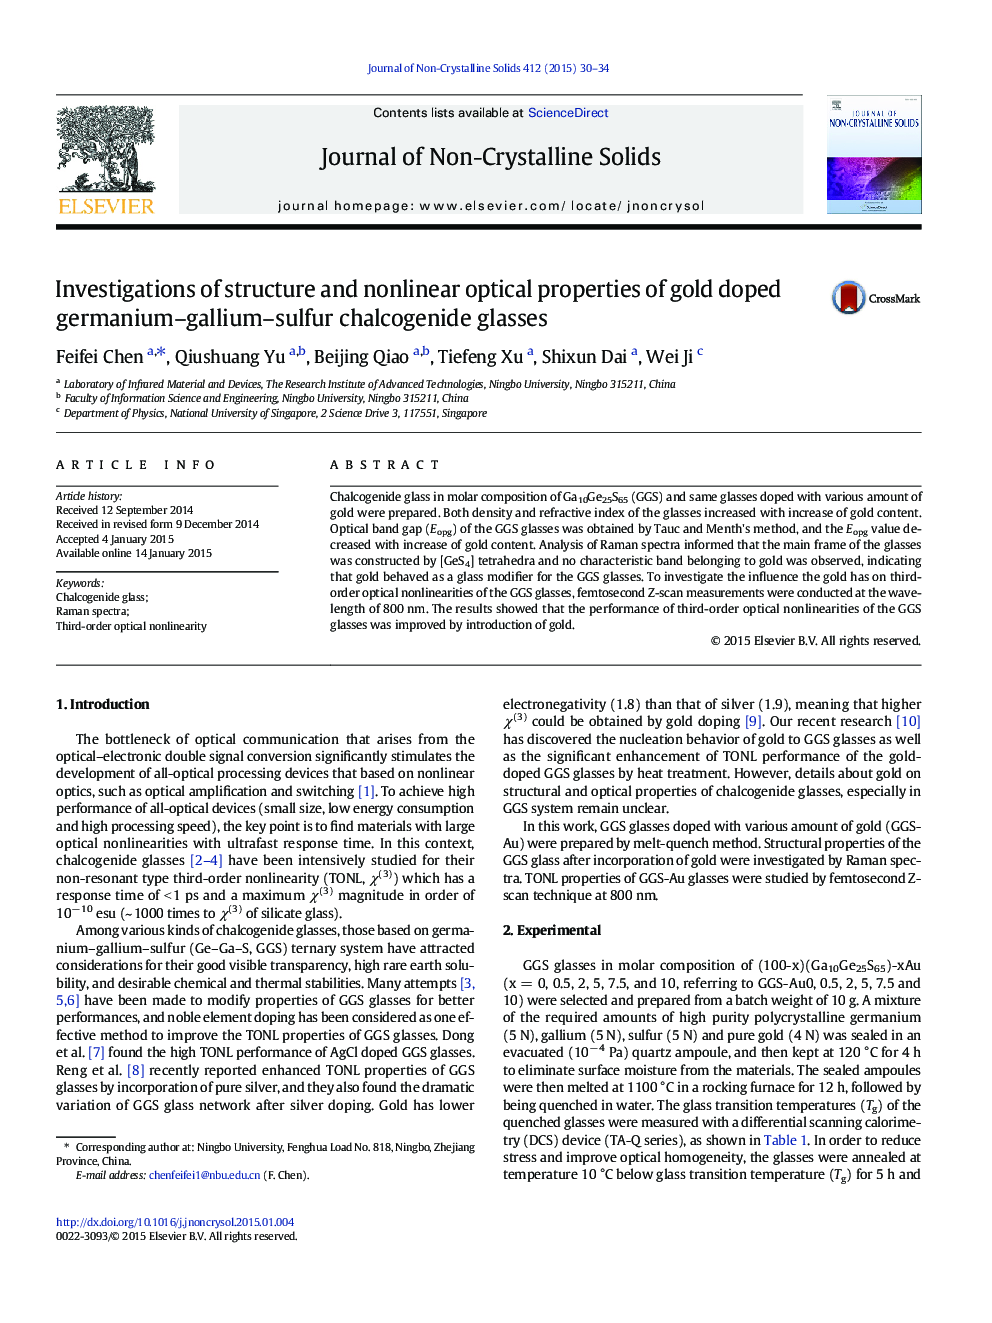 بررسی ساختار و خواص نوری خطی خالص گالیموم گالوژنید سولفوریک 